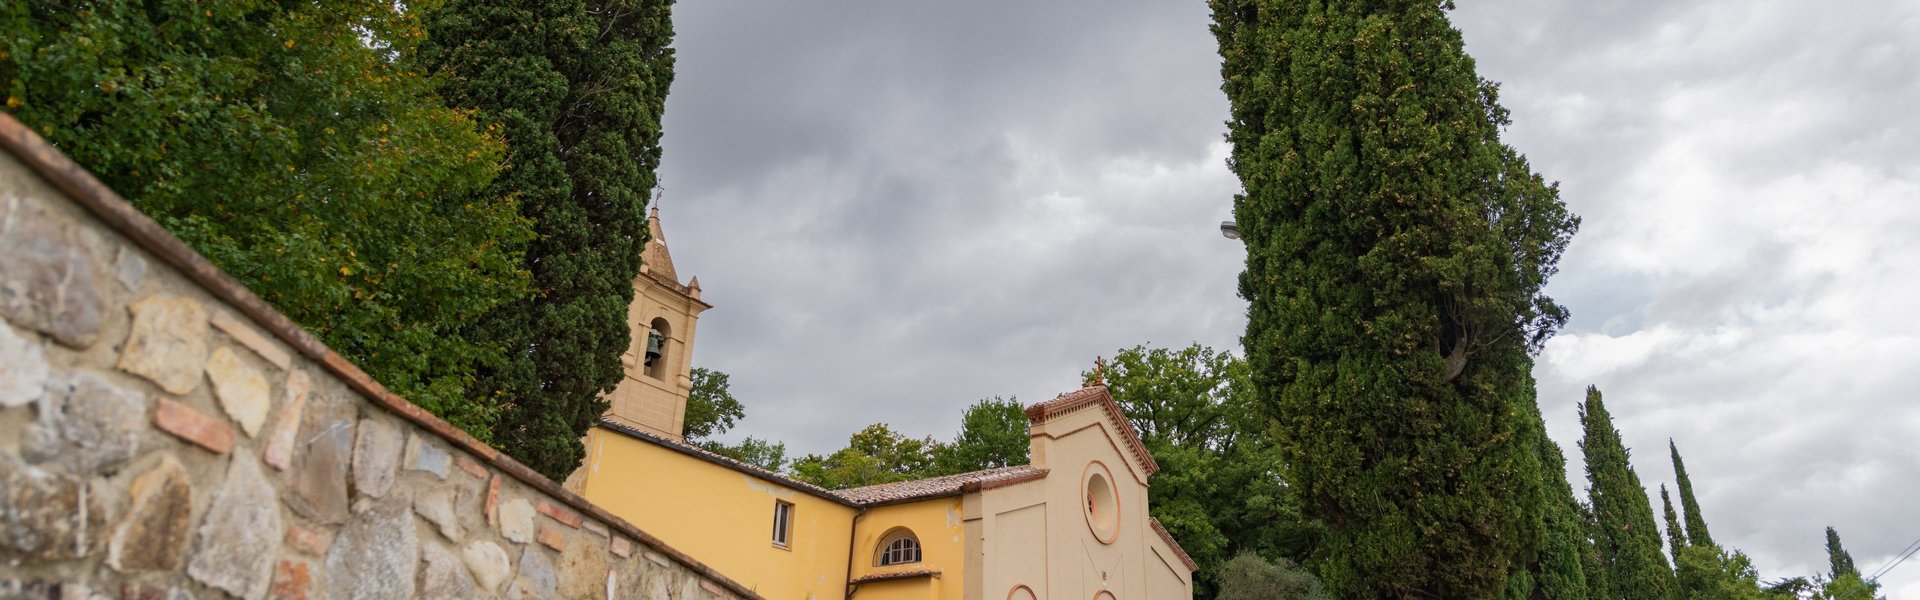 Chiesa di S. Maria Assunta a Palazzone